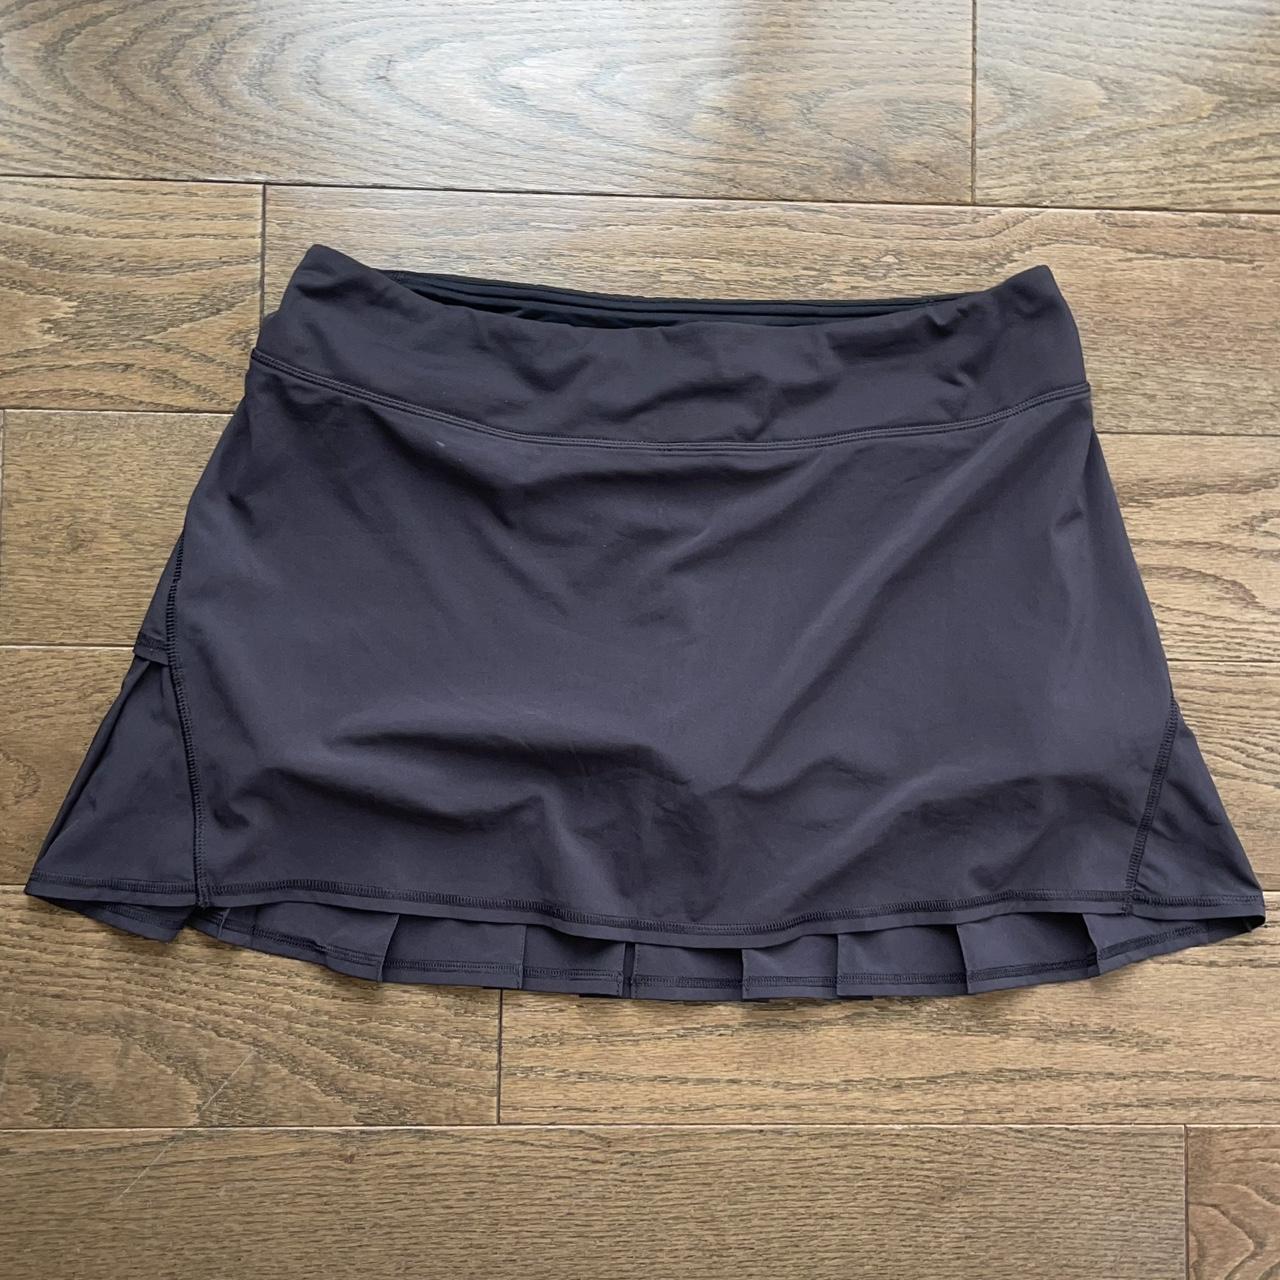 Lululemon Athletica Pace Setter Skirt in Bruised - Depop